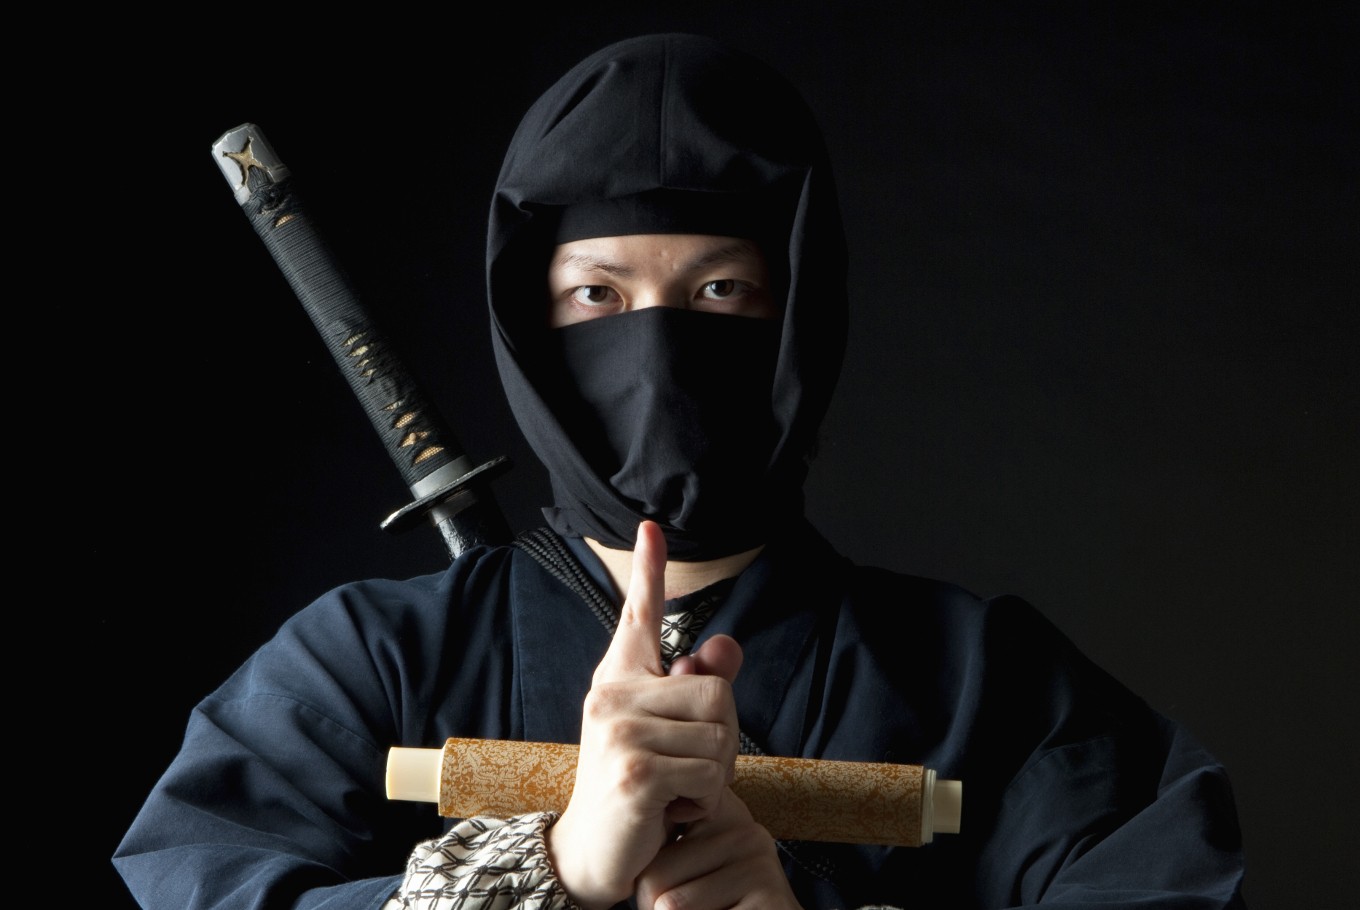 Pertama Kalinya! Seorang Pria Jepang Berhasil Meraih S2 Ilmu Ninja, Apakah Mahasiswa Indonesia Berminat Jadi Yang Kedua Kalinya?